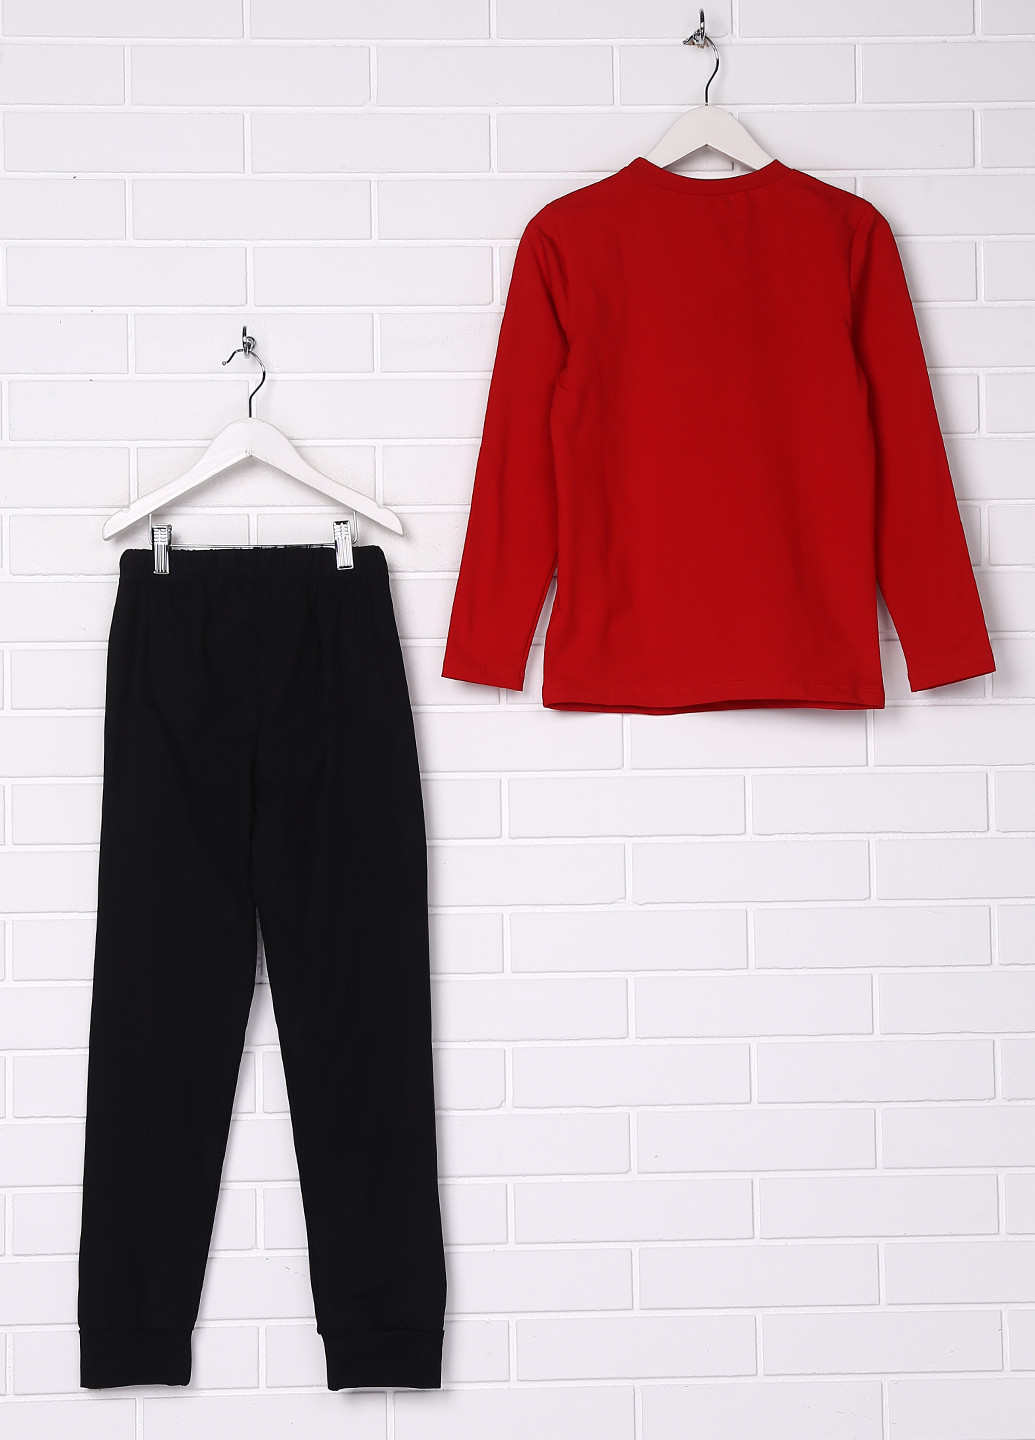 Красный демисезонный комплект (лонгслив, брюки) Фабрика наш одяг